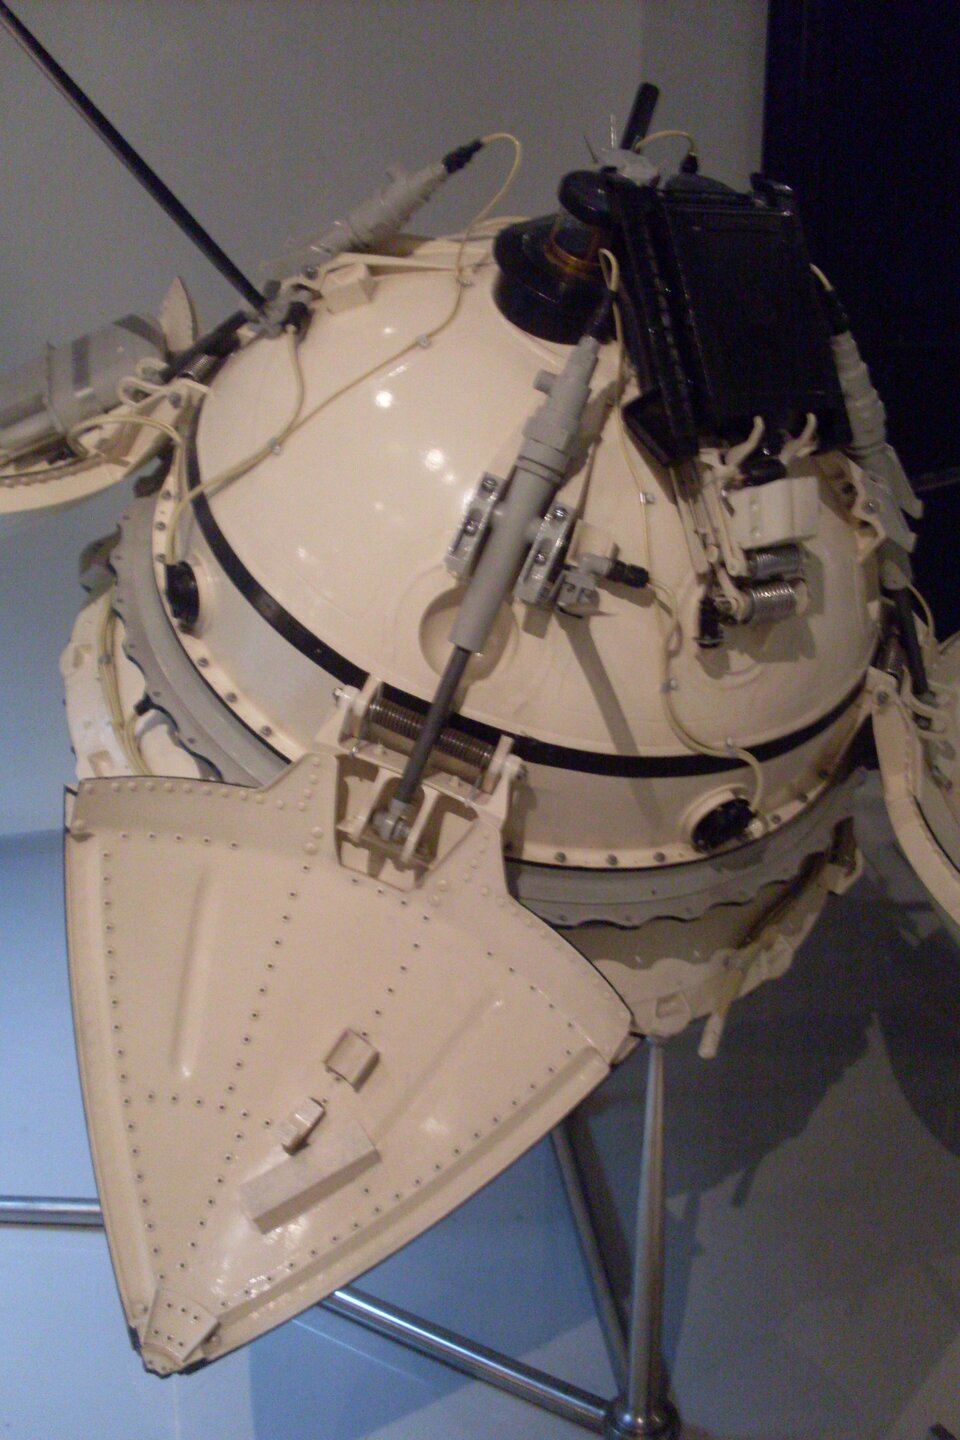 Réplica (1:1) del módulo de descenso de Mars 3 en el Museo Memorial de los Cosmonautas en Moscú, Rusia. Obra personal de Armael [CC0], a través de Wikimedia Commons